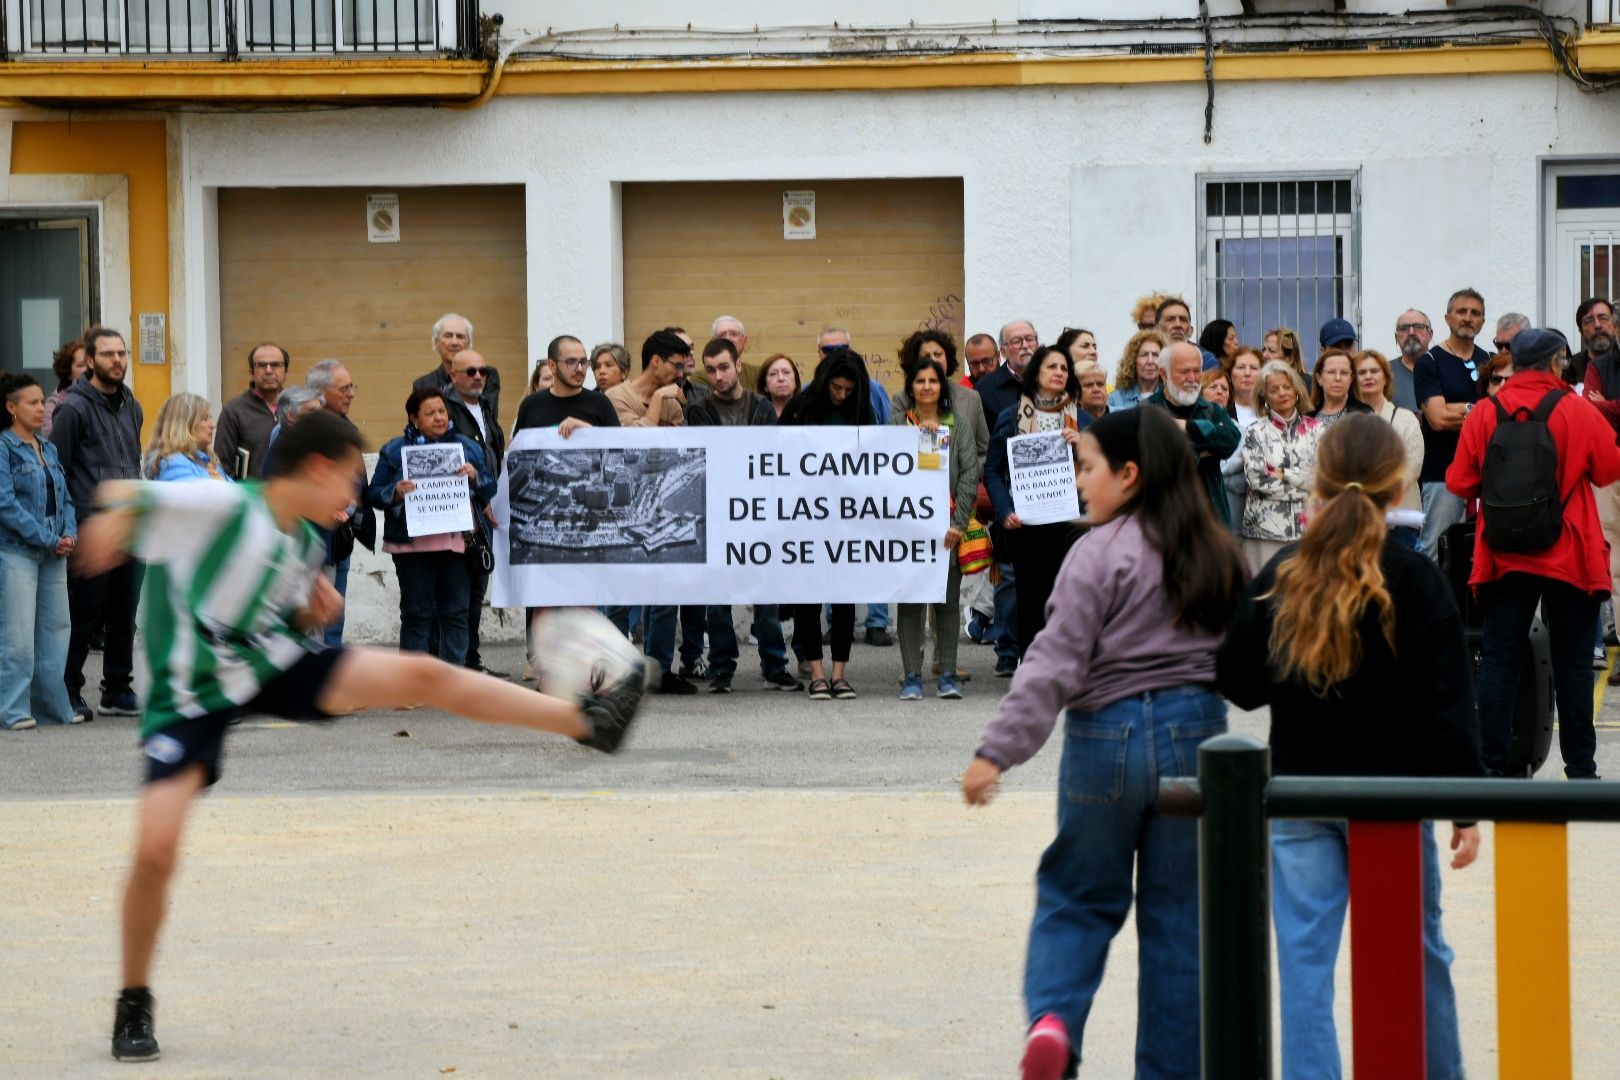 Pancarta reivindicando que "el Campo de las Balas no se vende", en la concentración en la plaza Manolo Santander.